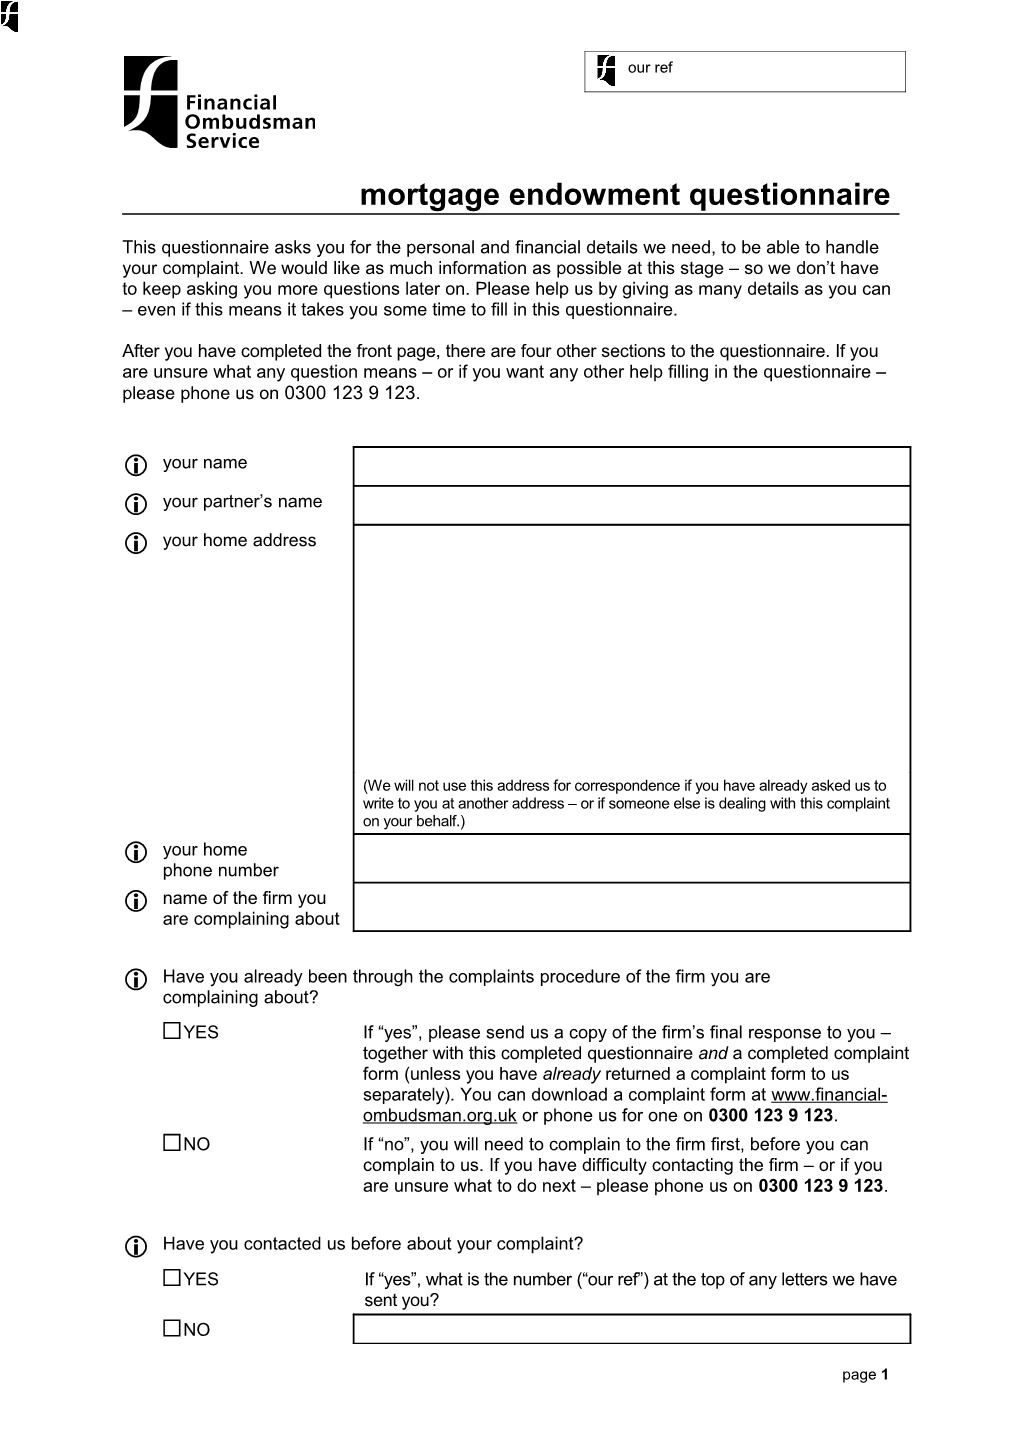 Mortgage Endowment Questionnaire